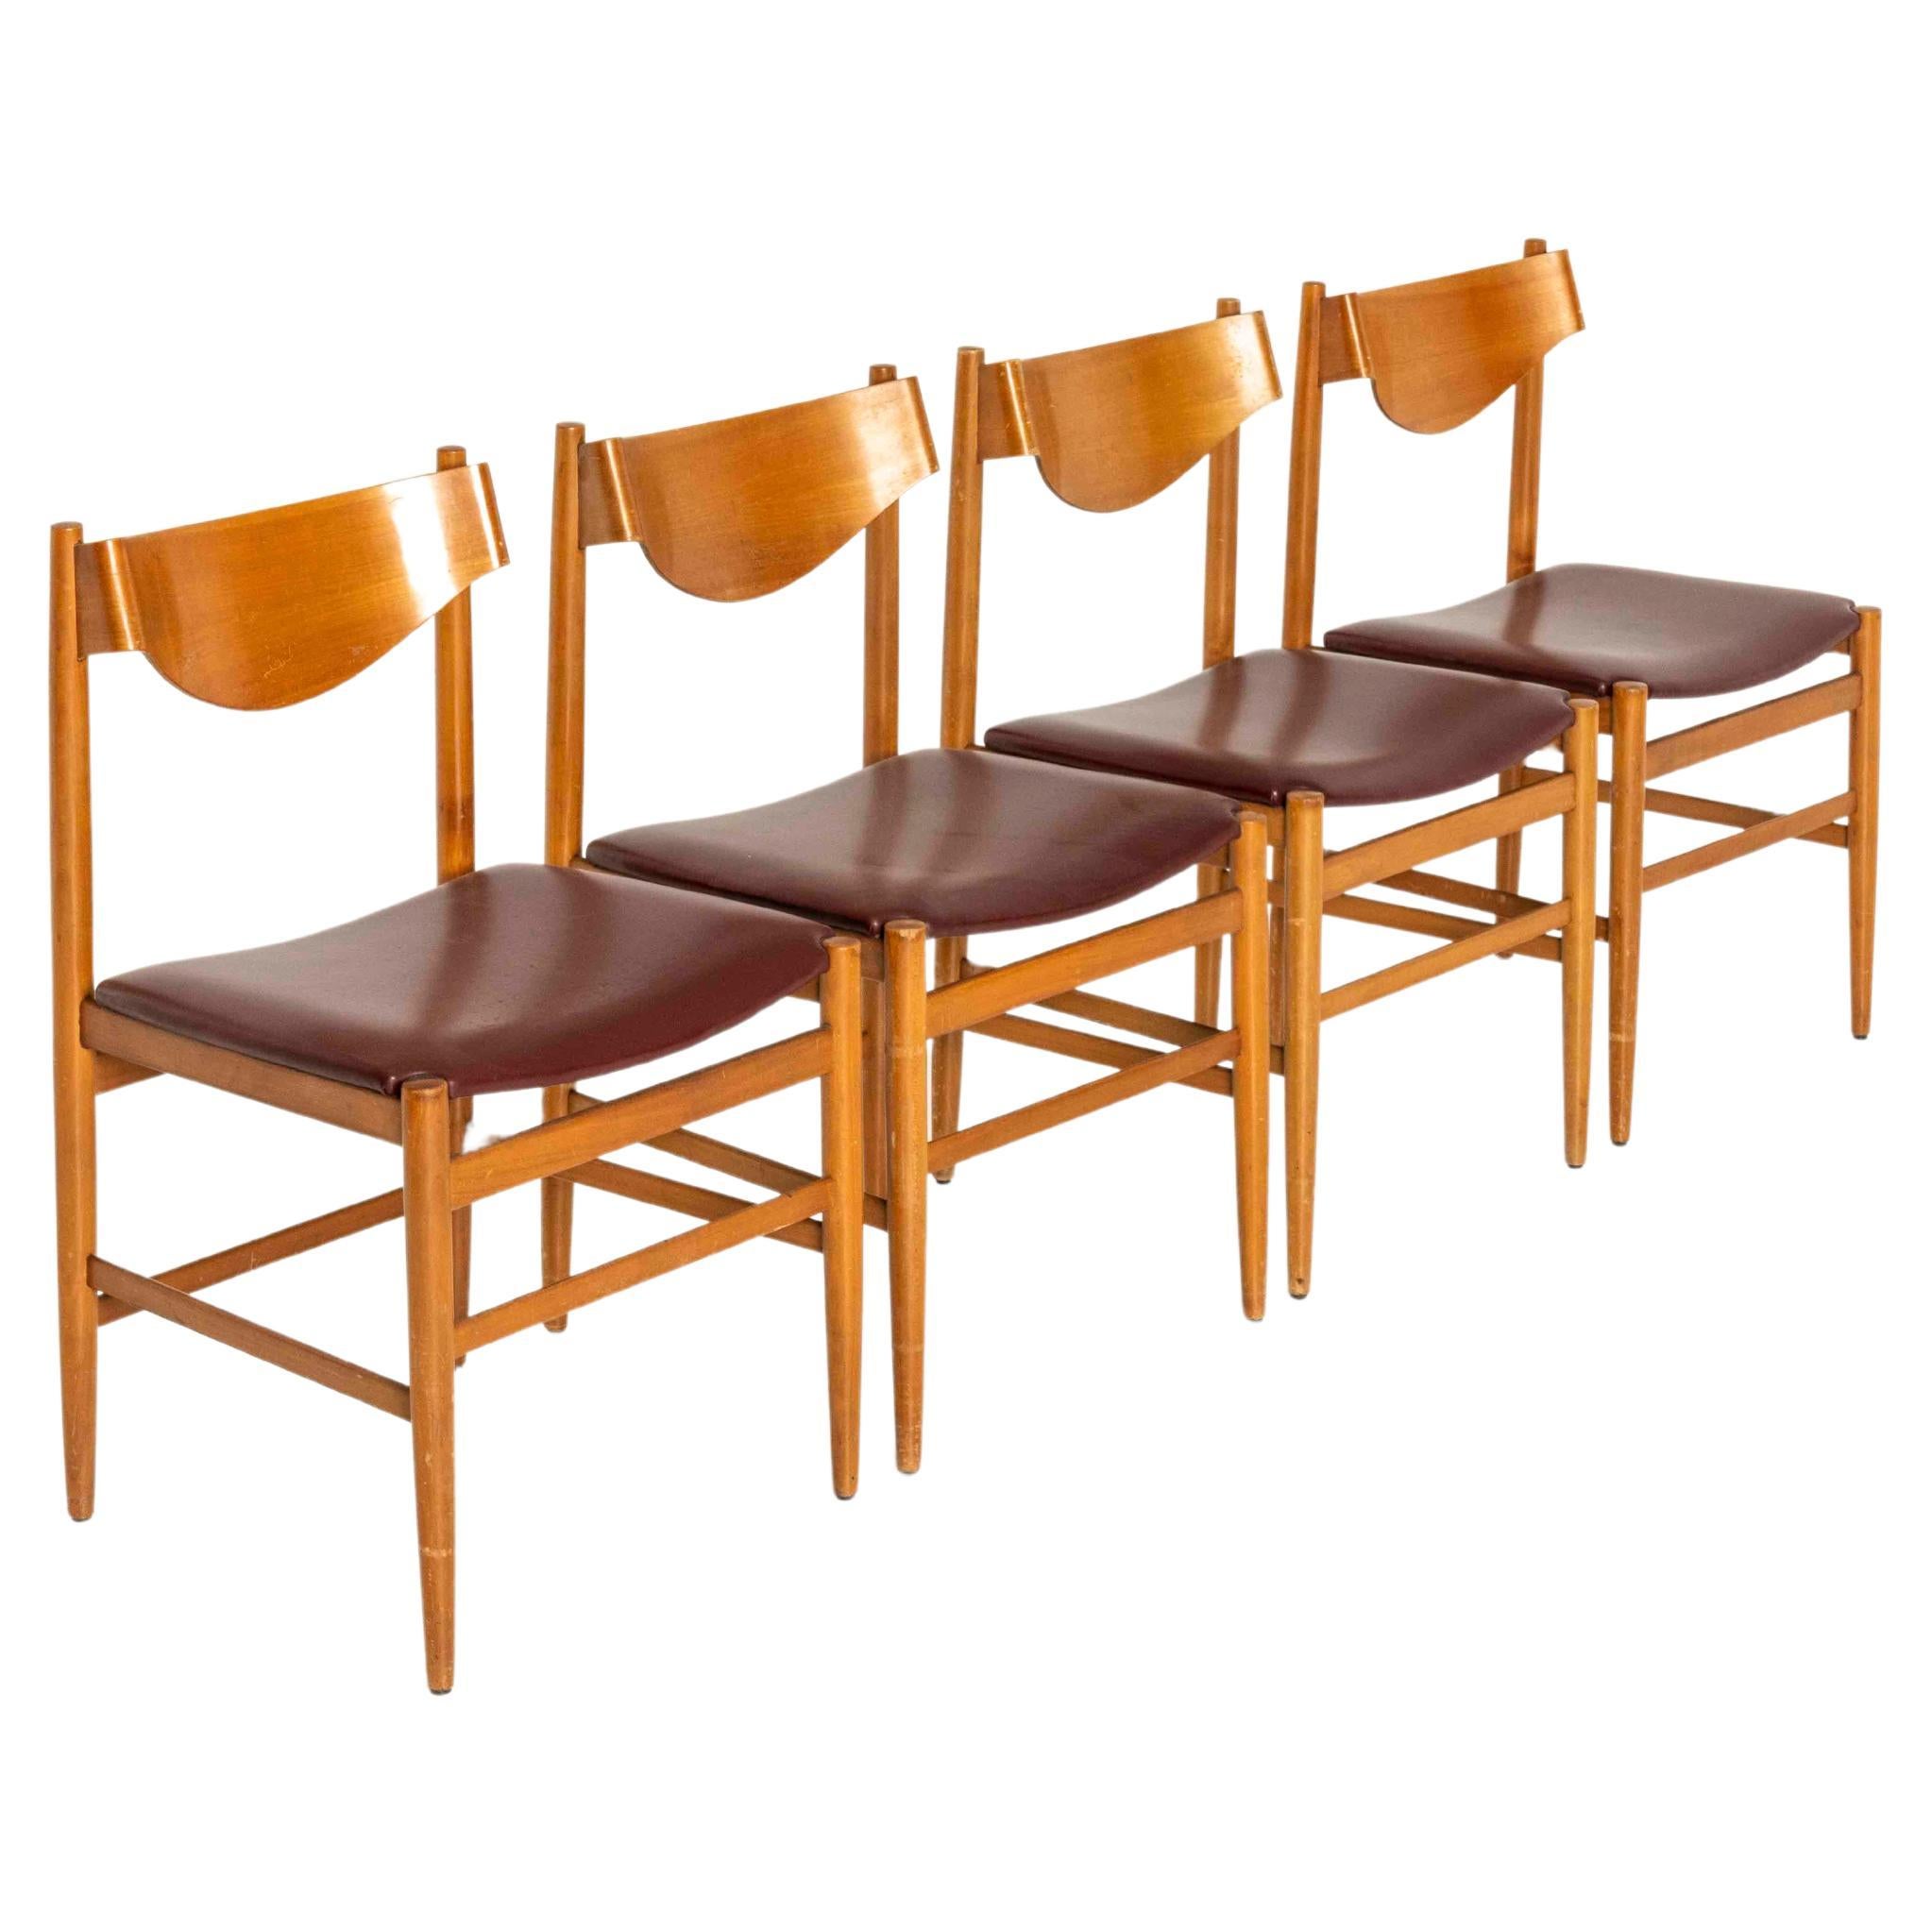 Satz von vier Esszimmerstühlen von Gianfranco Frattini für Cassina aus den 1960er Jahren. Die Stühle sind aus Teakholz mit einer Rückenlehne aus Formsperrholz und rotem (Kunst-)Leder. Sie sind sehr ästhetisch und in gutem Zustand mit normalen